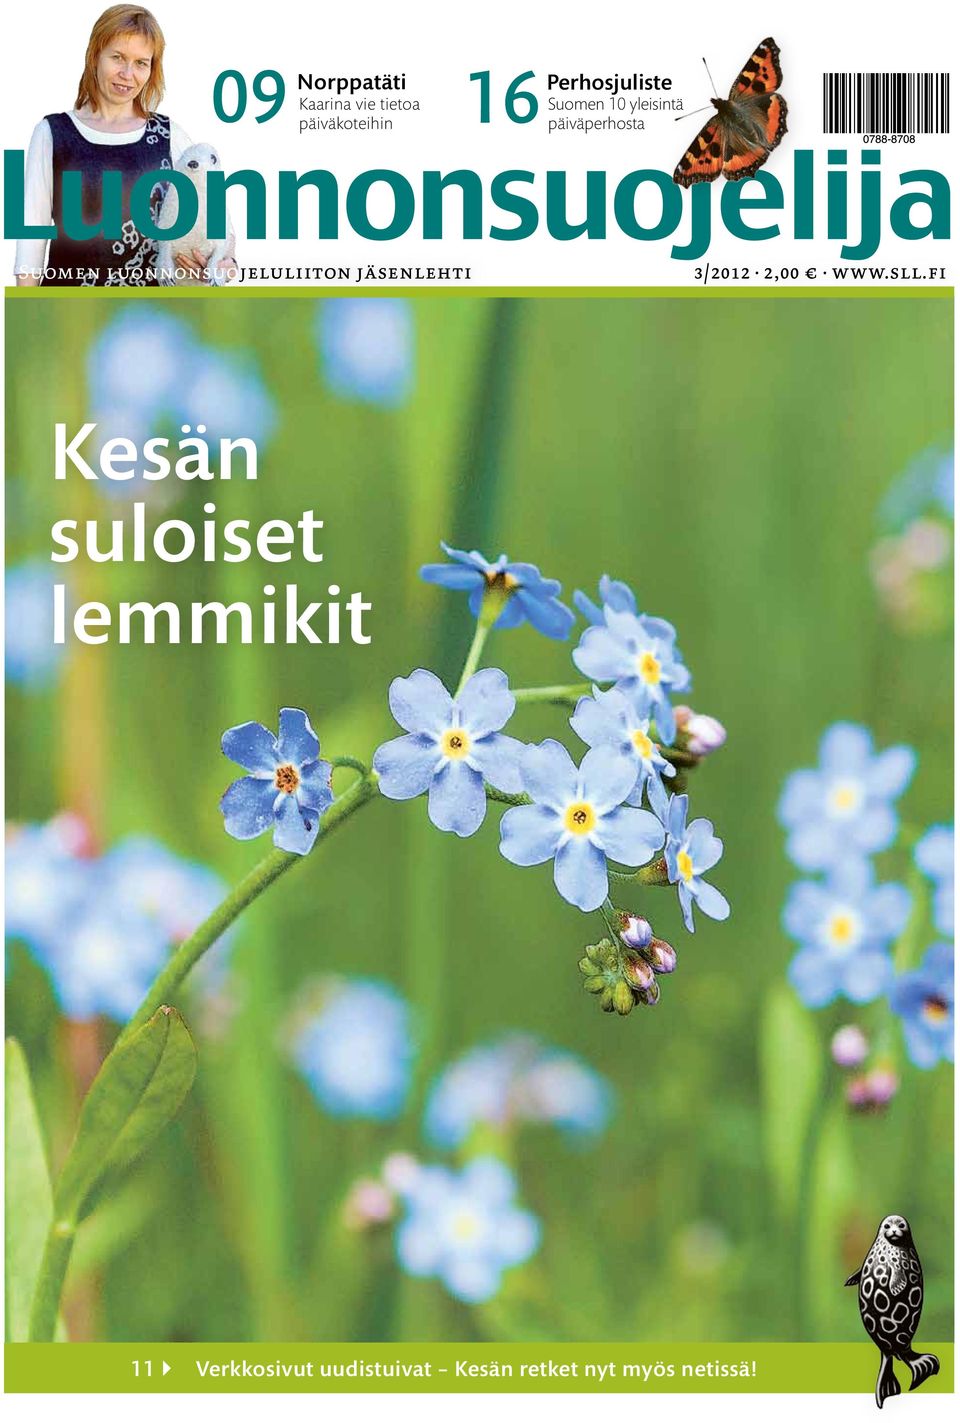 luonnonsuojeluliiton jäsenlehti 3/2012 2,00 www.sll.